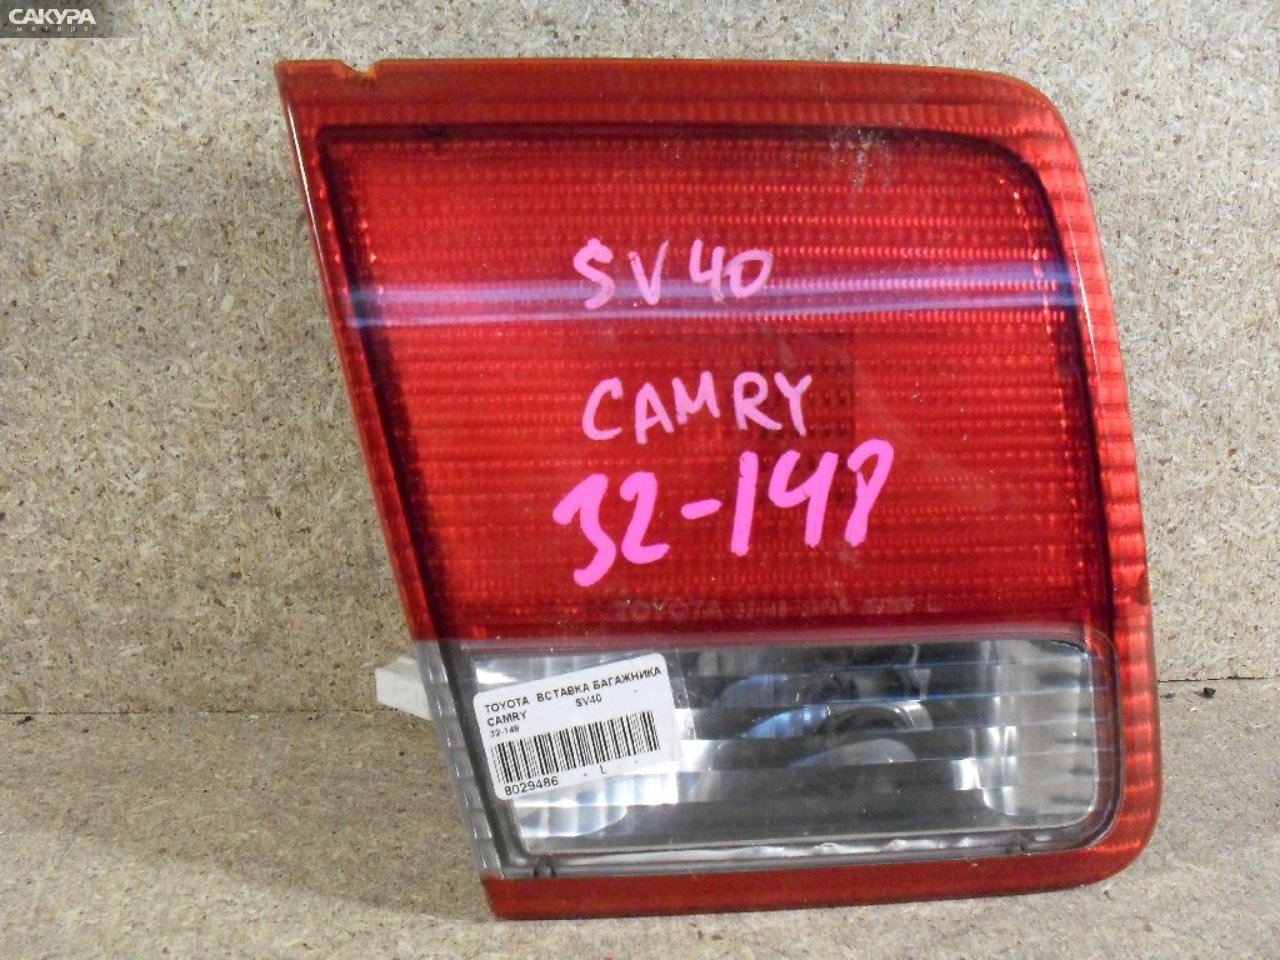 Фонарь вставка багажника левый Toyota Camry SV40 4S-FE 32-148: купить в Сакура Абакан.